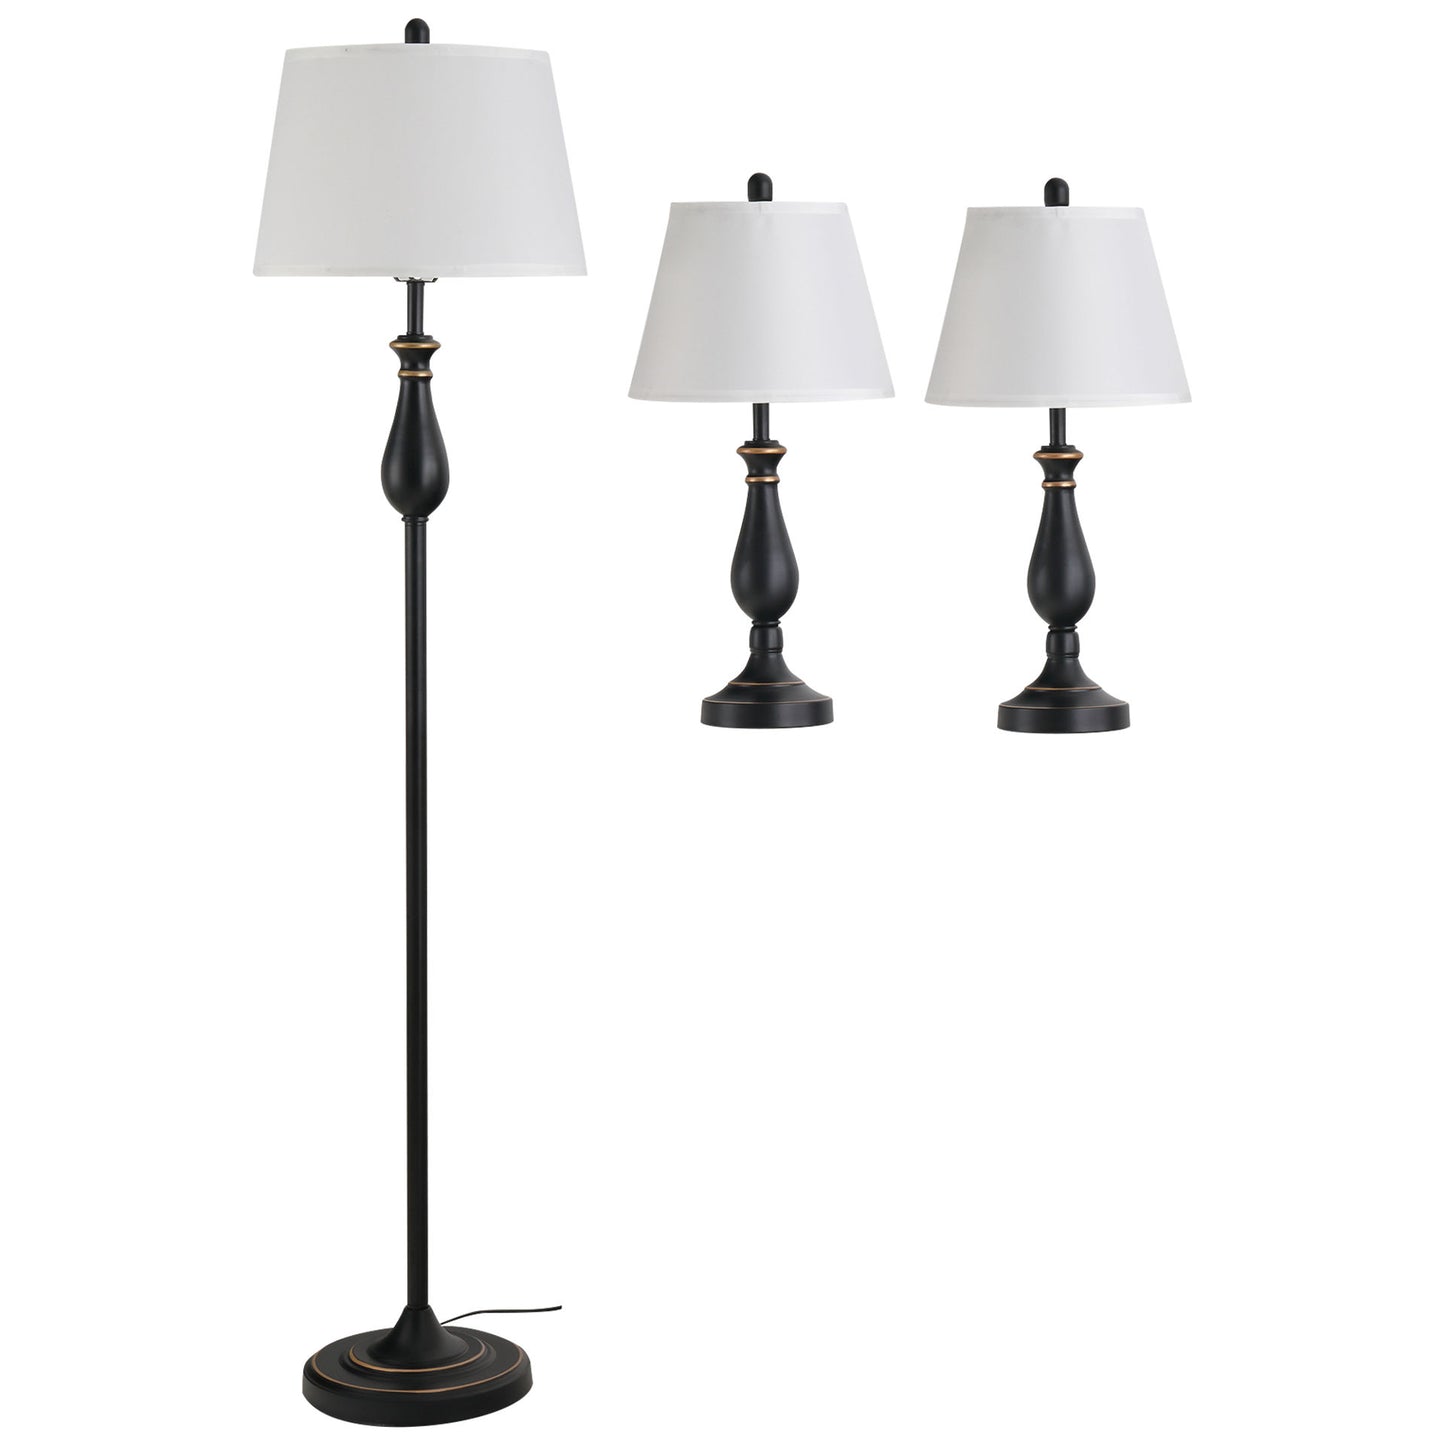 Nancy's Alnwick Set de 3 lampes 2 lampe de table (H 158cm) + 1 lampadaire (H 62cm) Vintage, noir + blanc